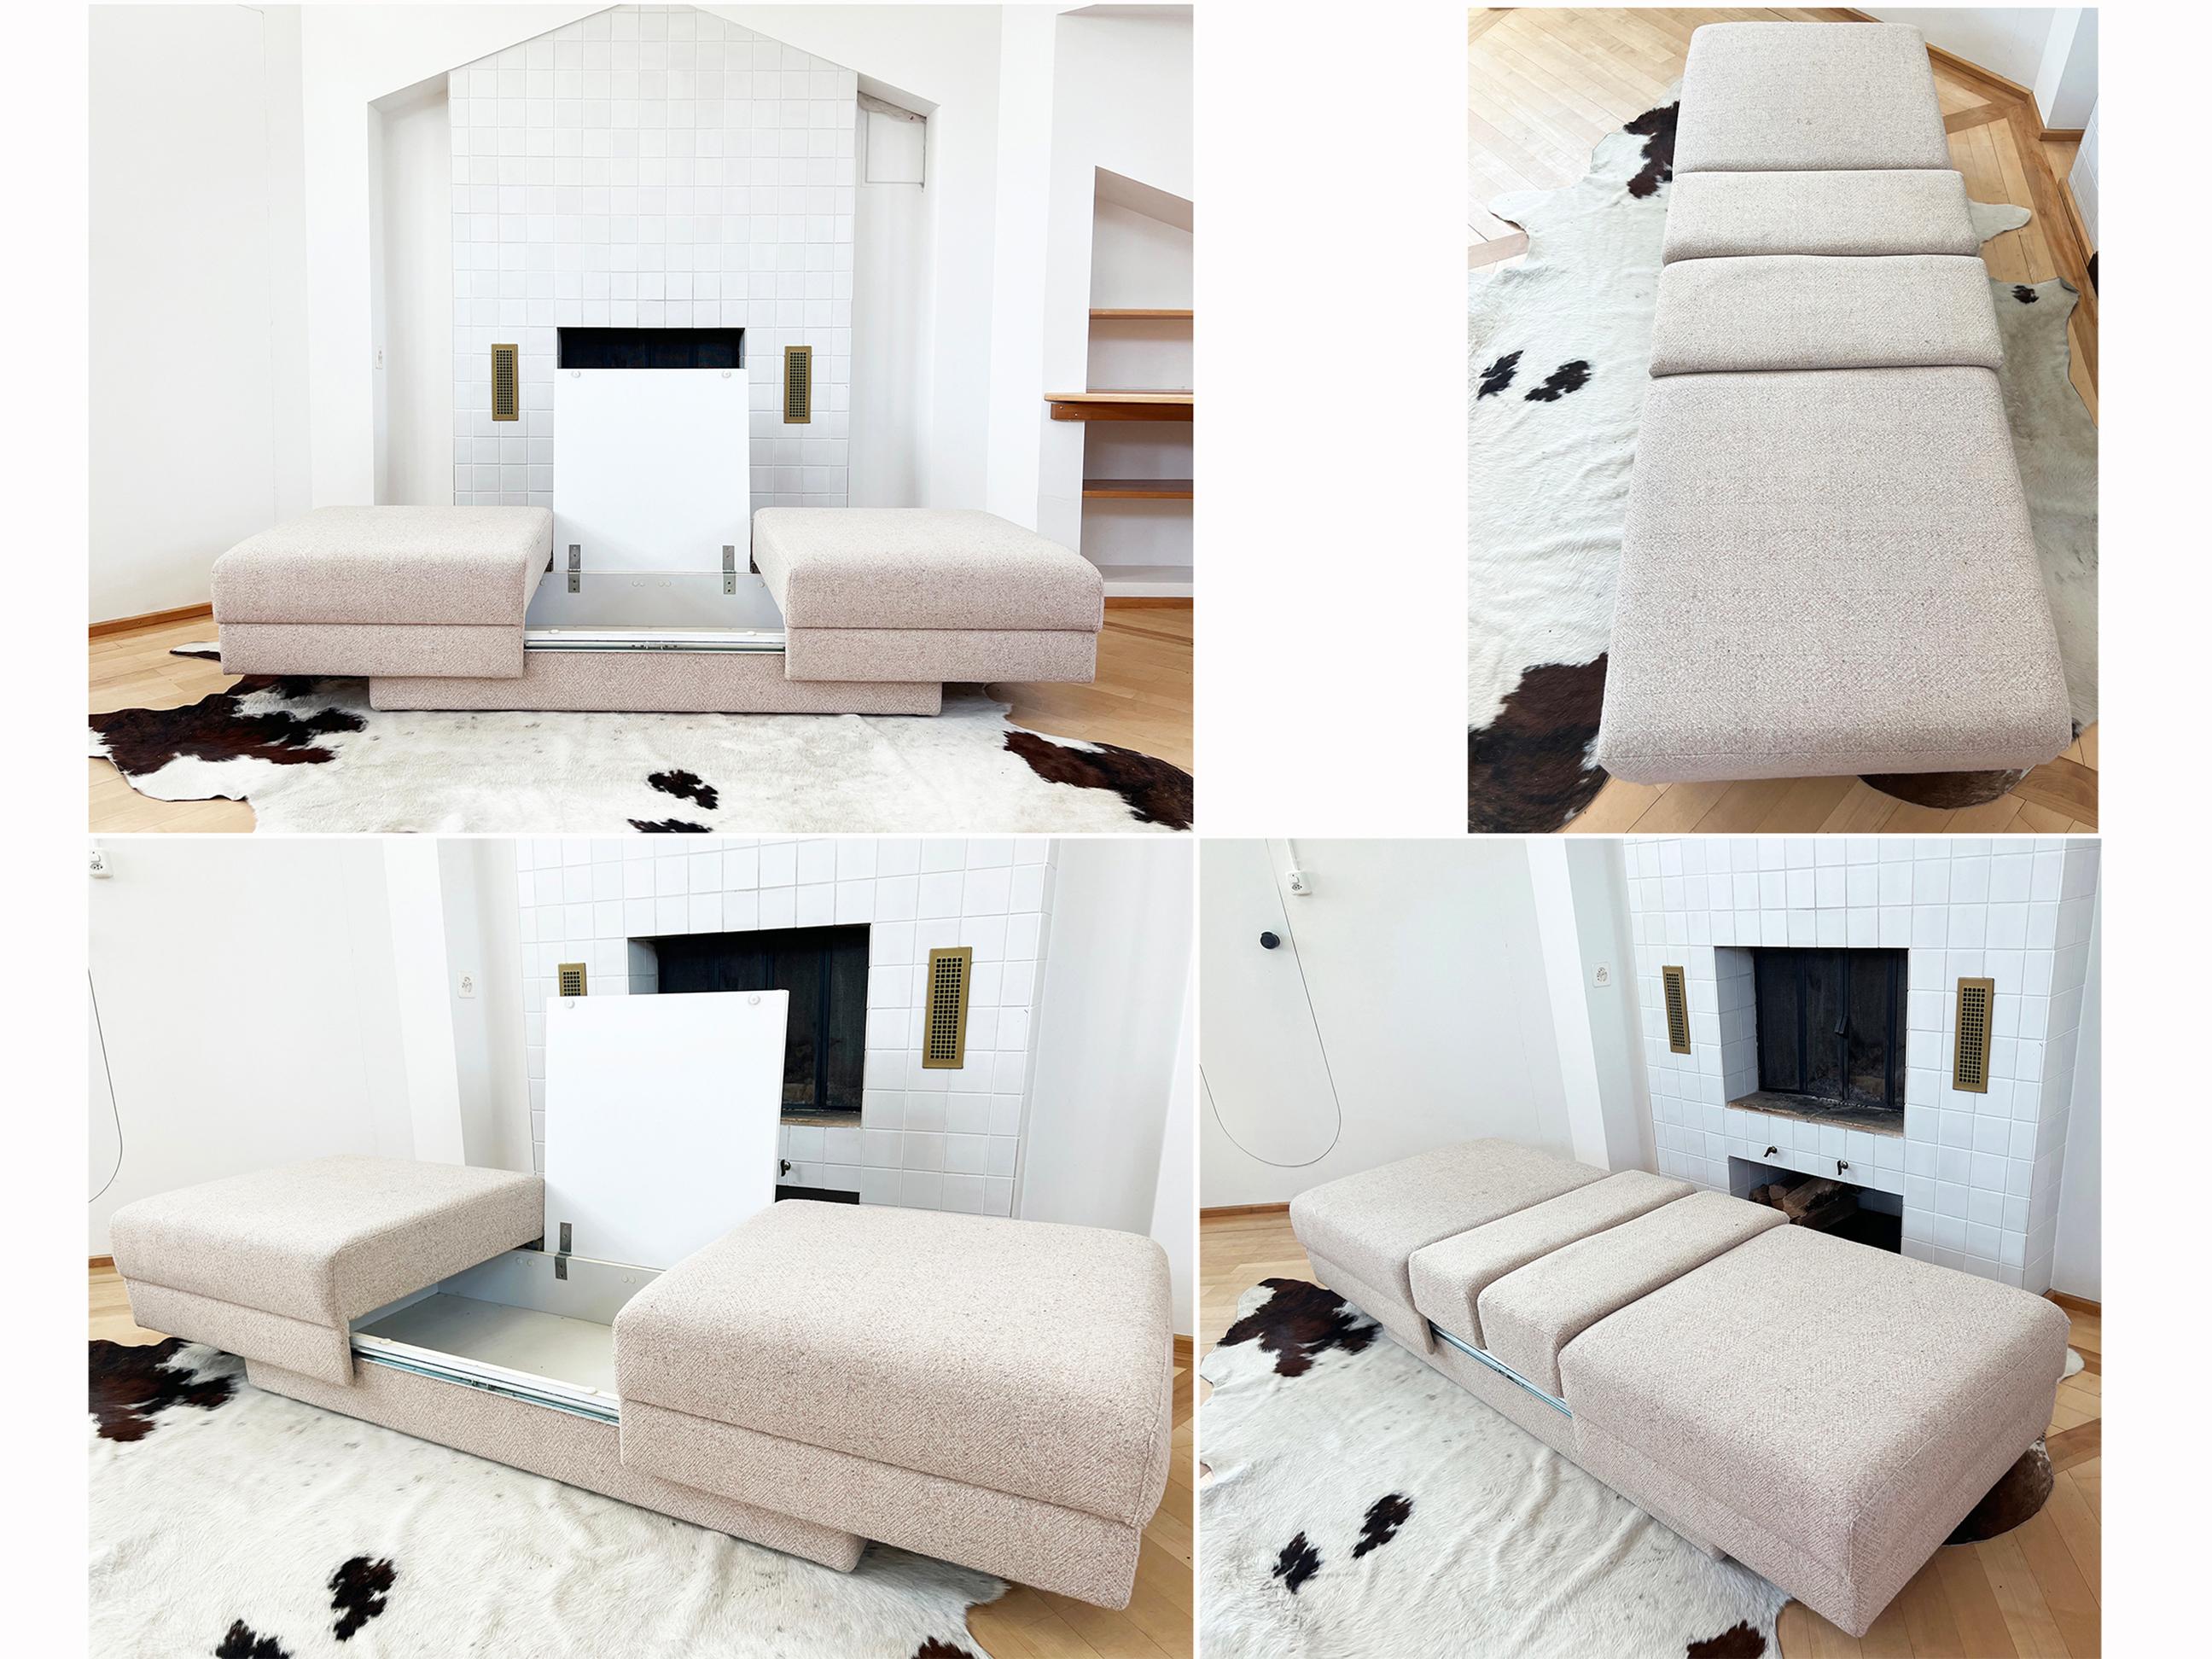 Dieses einzigartige Midcentury-Design-Sofa / Daybed / Lounge-Stühle mit einem Tisch dazwischen ist unglaublich vielseitig und minimal! 

Ein schönes funktionelles Design, weil dieses Stück sehr cooles Stück Design kann als verwendet